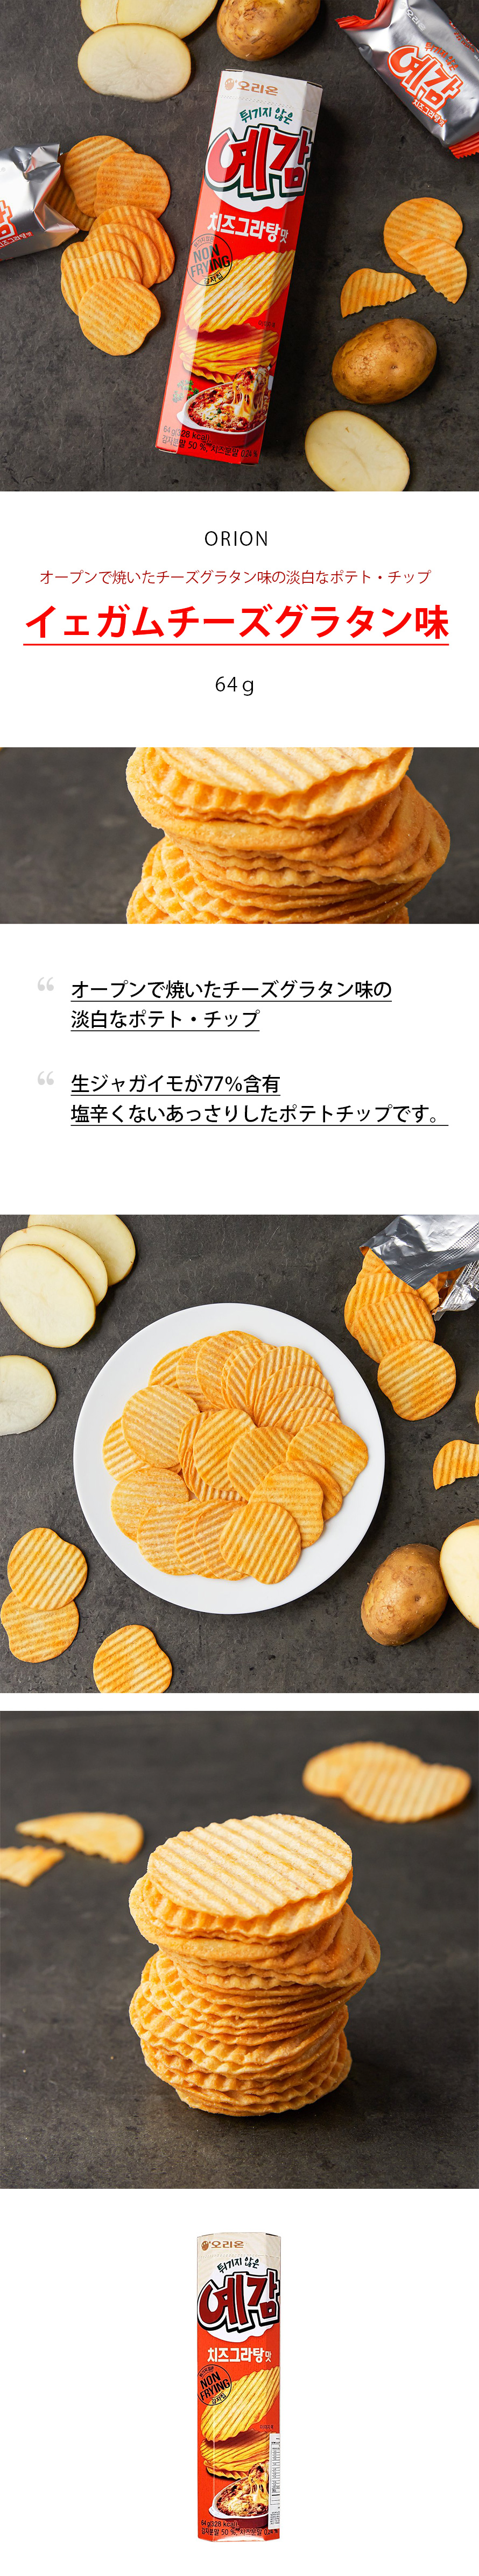 オリオン]イェガム チーズグラタン味 / 64g/韓国お菓子/韓国食品 :7067:韓国市場 - 通販 - Yahoo!ショッピング